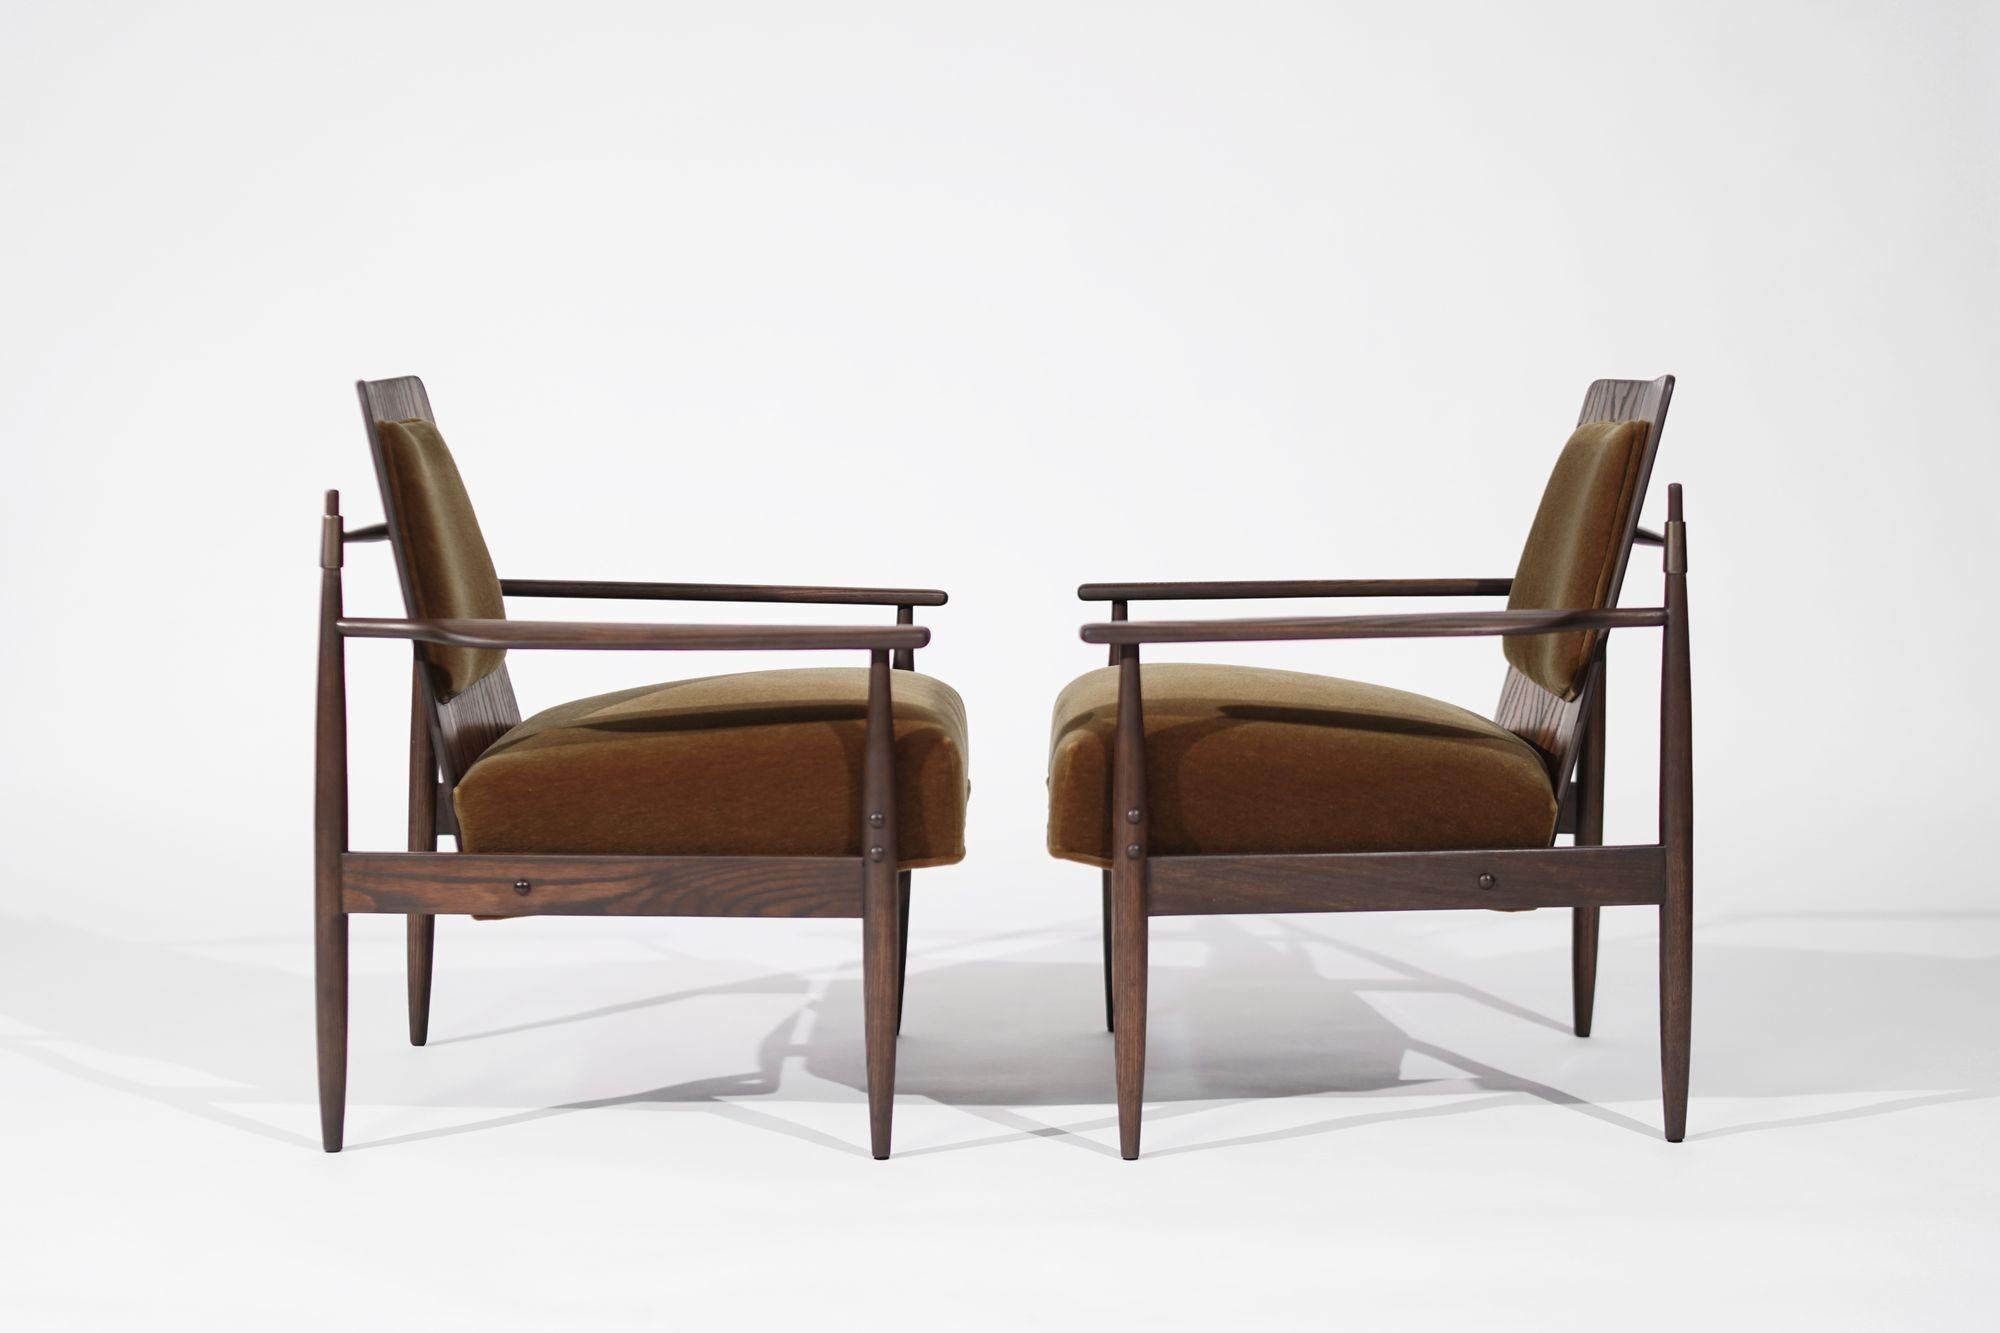 Plongez dans l'élégance moderne du milieu du siècle avec cette paire exquise de chaises longues du célèbre designer Dan Johnson, fabriquées vers 1950-1959. Ces chaises sont dotées d'une structure en chêne robuste, d'un rembourrage en mohair